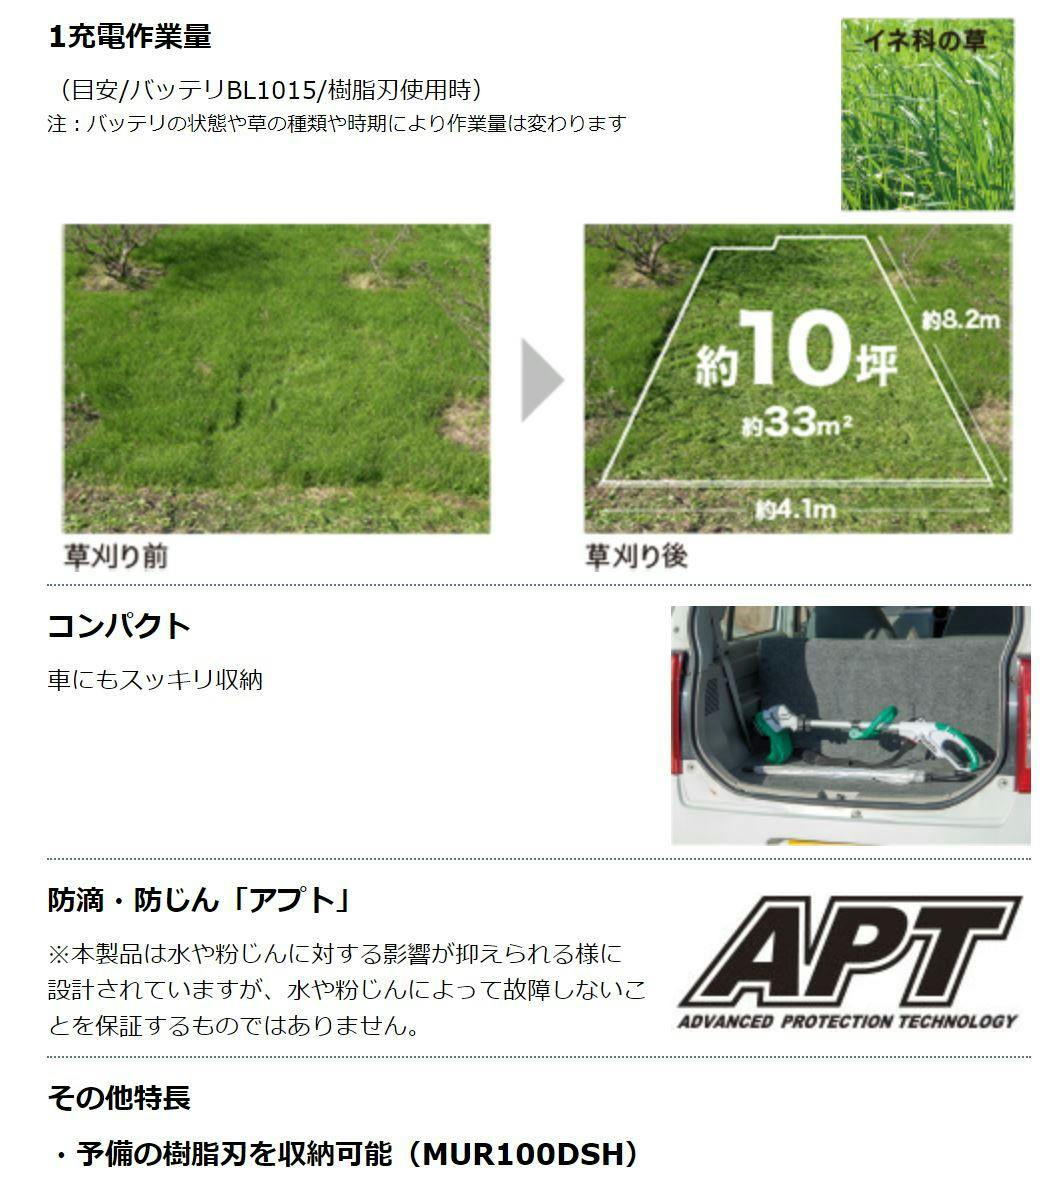 マキタ 充電式草刈機 MUR100DSH | 園芸用品 | ホームセンター通販 